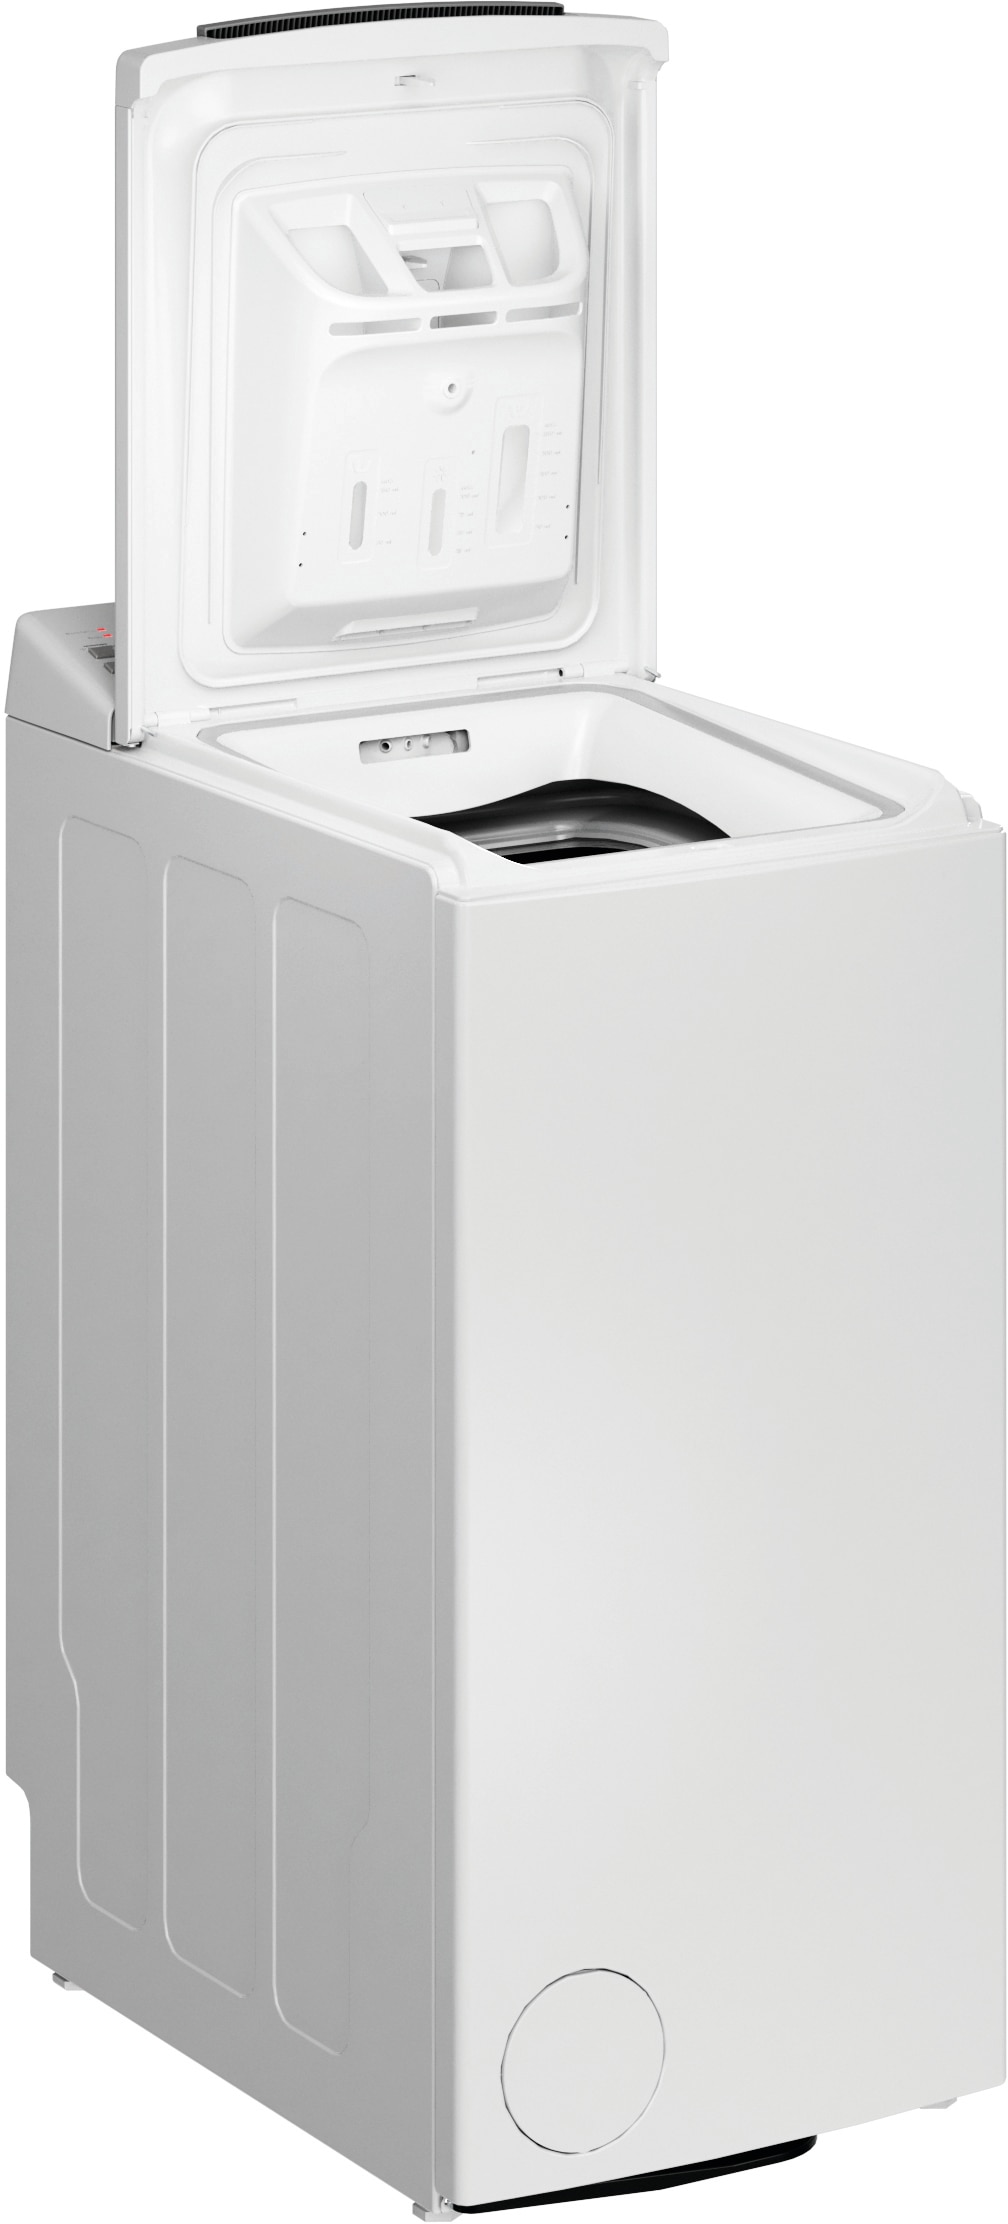 Waschmaschine Toplader »WMT Eco Shield 6523 C«, WMT Eco Shield 6523 C, 6,5 kg, 1200 U/min